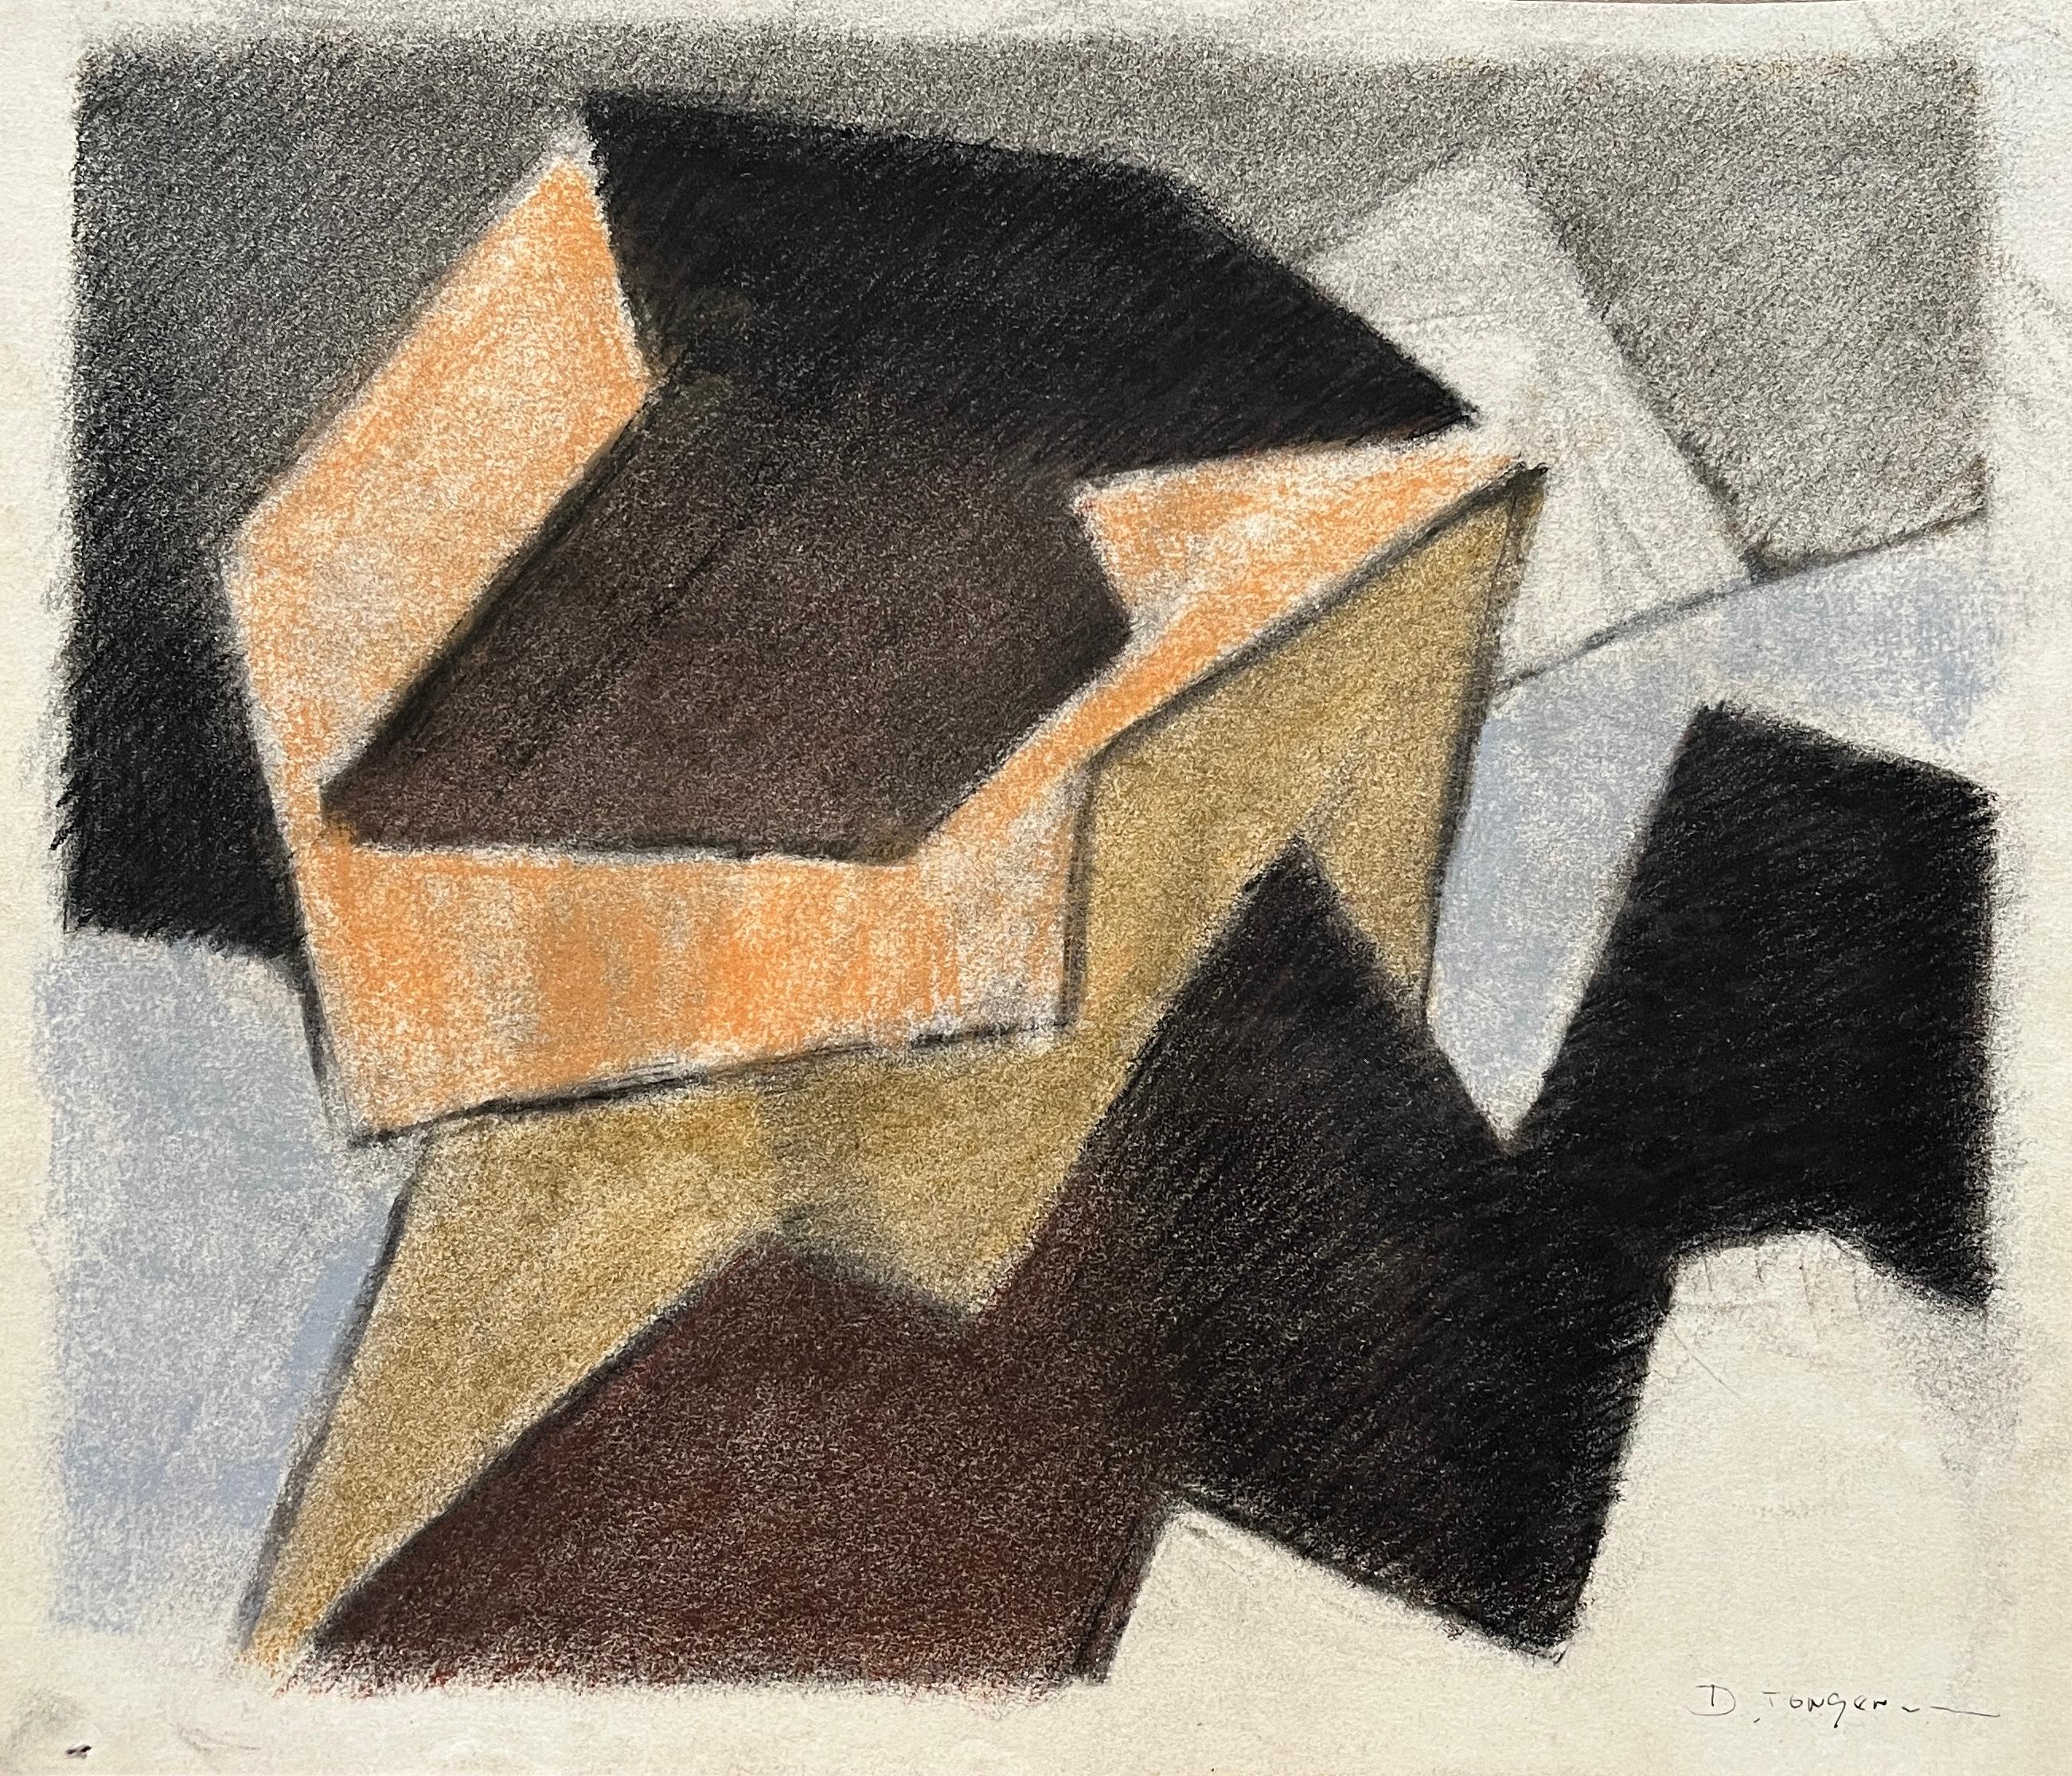 Abstract Drawing D. Tongen - Dessin abstrait cubiste "Orange, Brown, Black" au pastel doux datant des années 1980